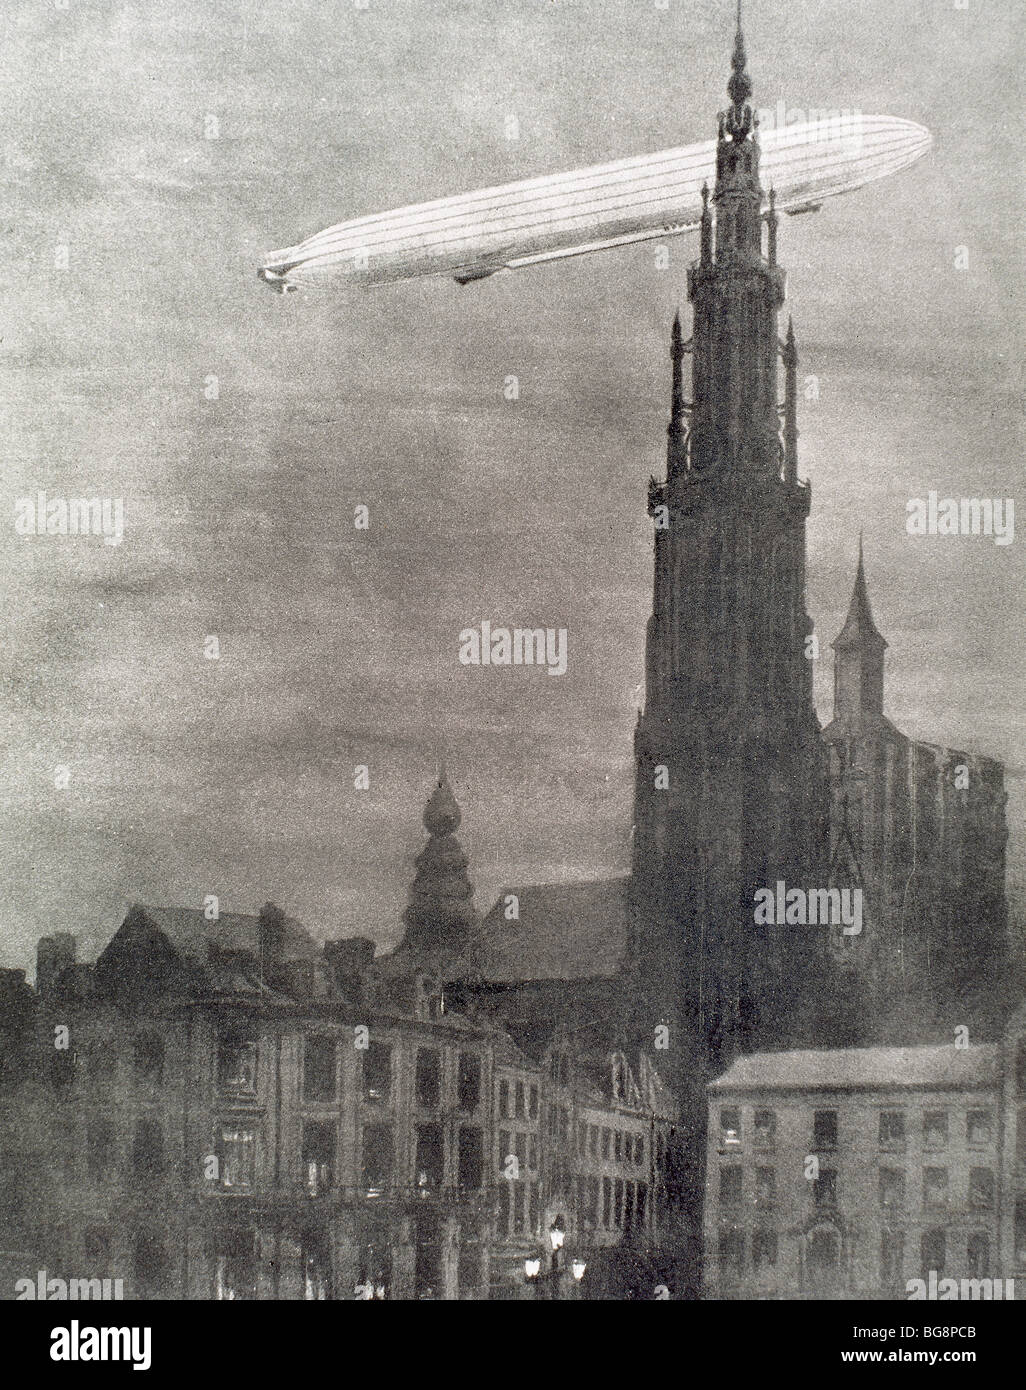 La prima guerra mondiale (1914-1918). Primo zeppelin tedeschi oltre ad Anversa la notte del 25 agosto la caduta di diverse bombe. Foto Stock